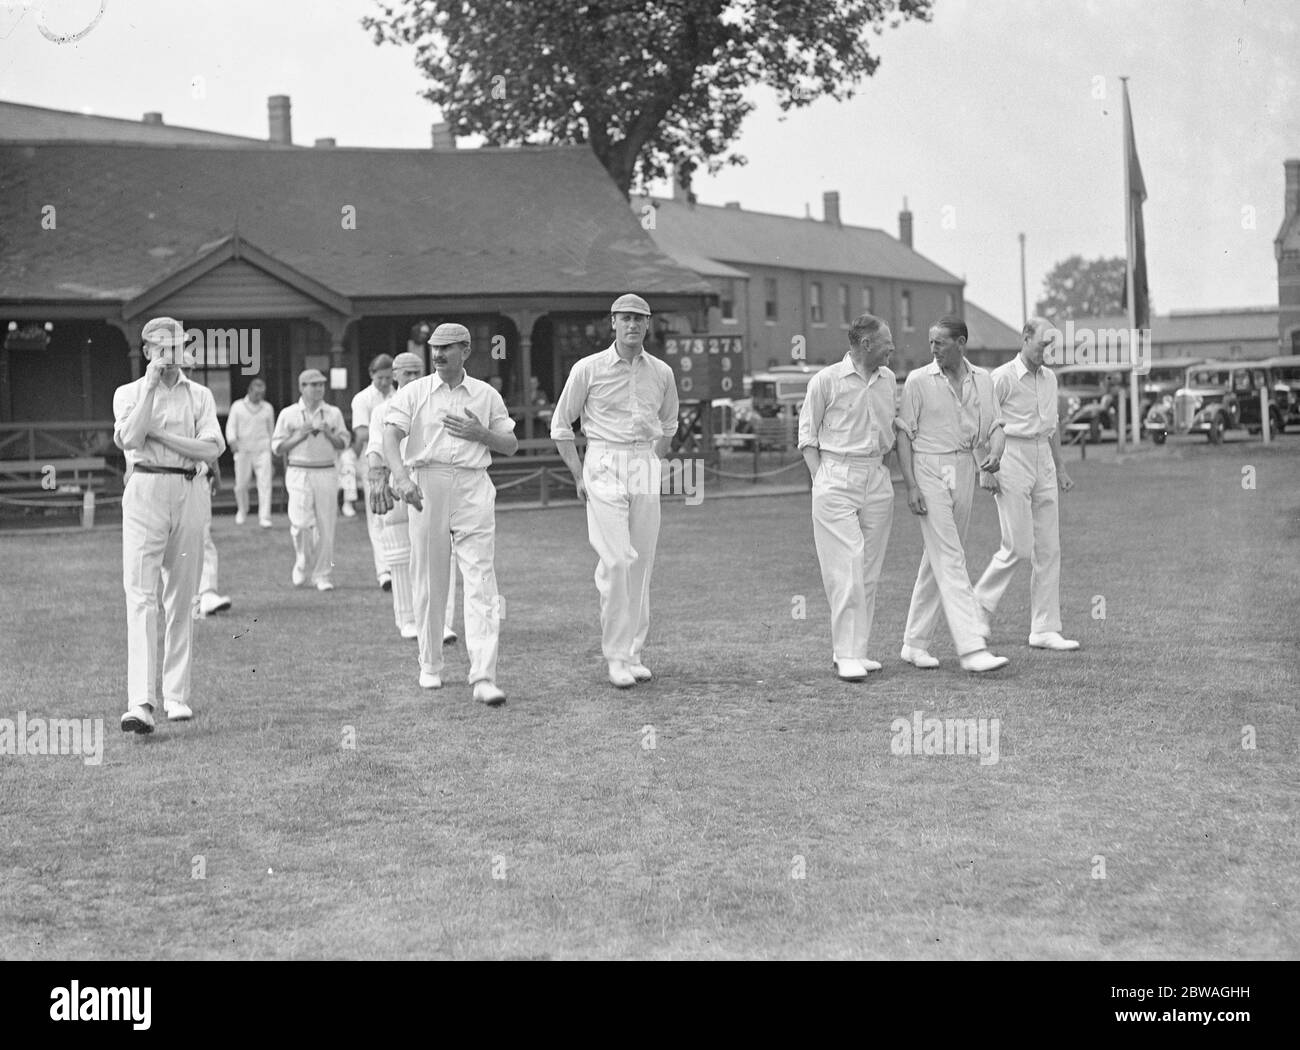 Das Royal Fusiliers Regiment hält seine "Cricket Week" in Hounslow Barracks und war "zu Hause" zu den "Eton Ramblers". Das Team von Eton Ramblers nimmt das Feld ein. 13 Juni 1934 Stockfoto